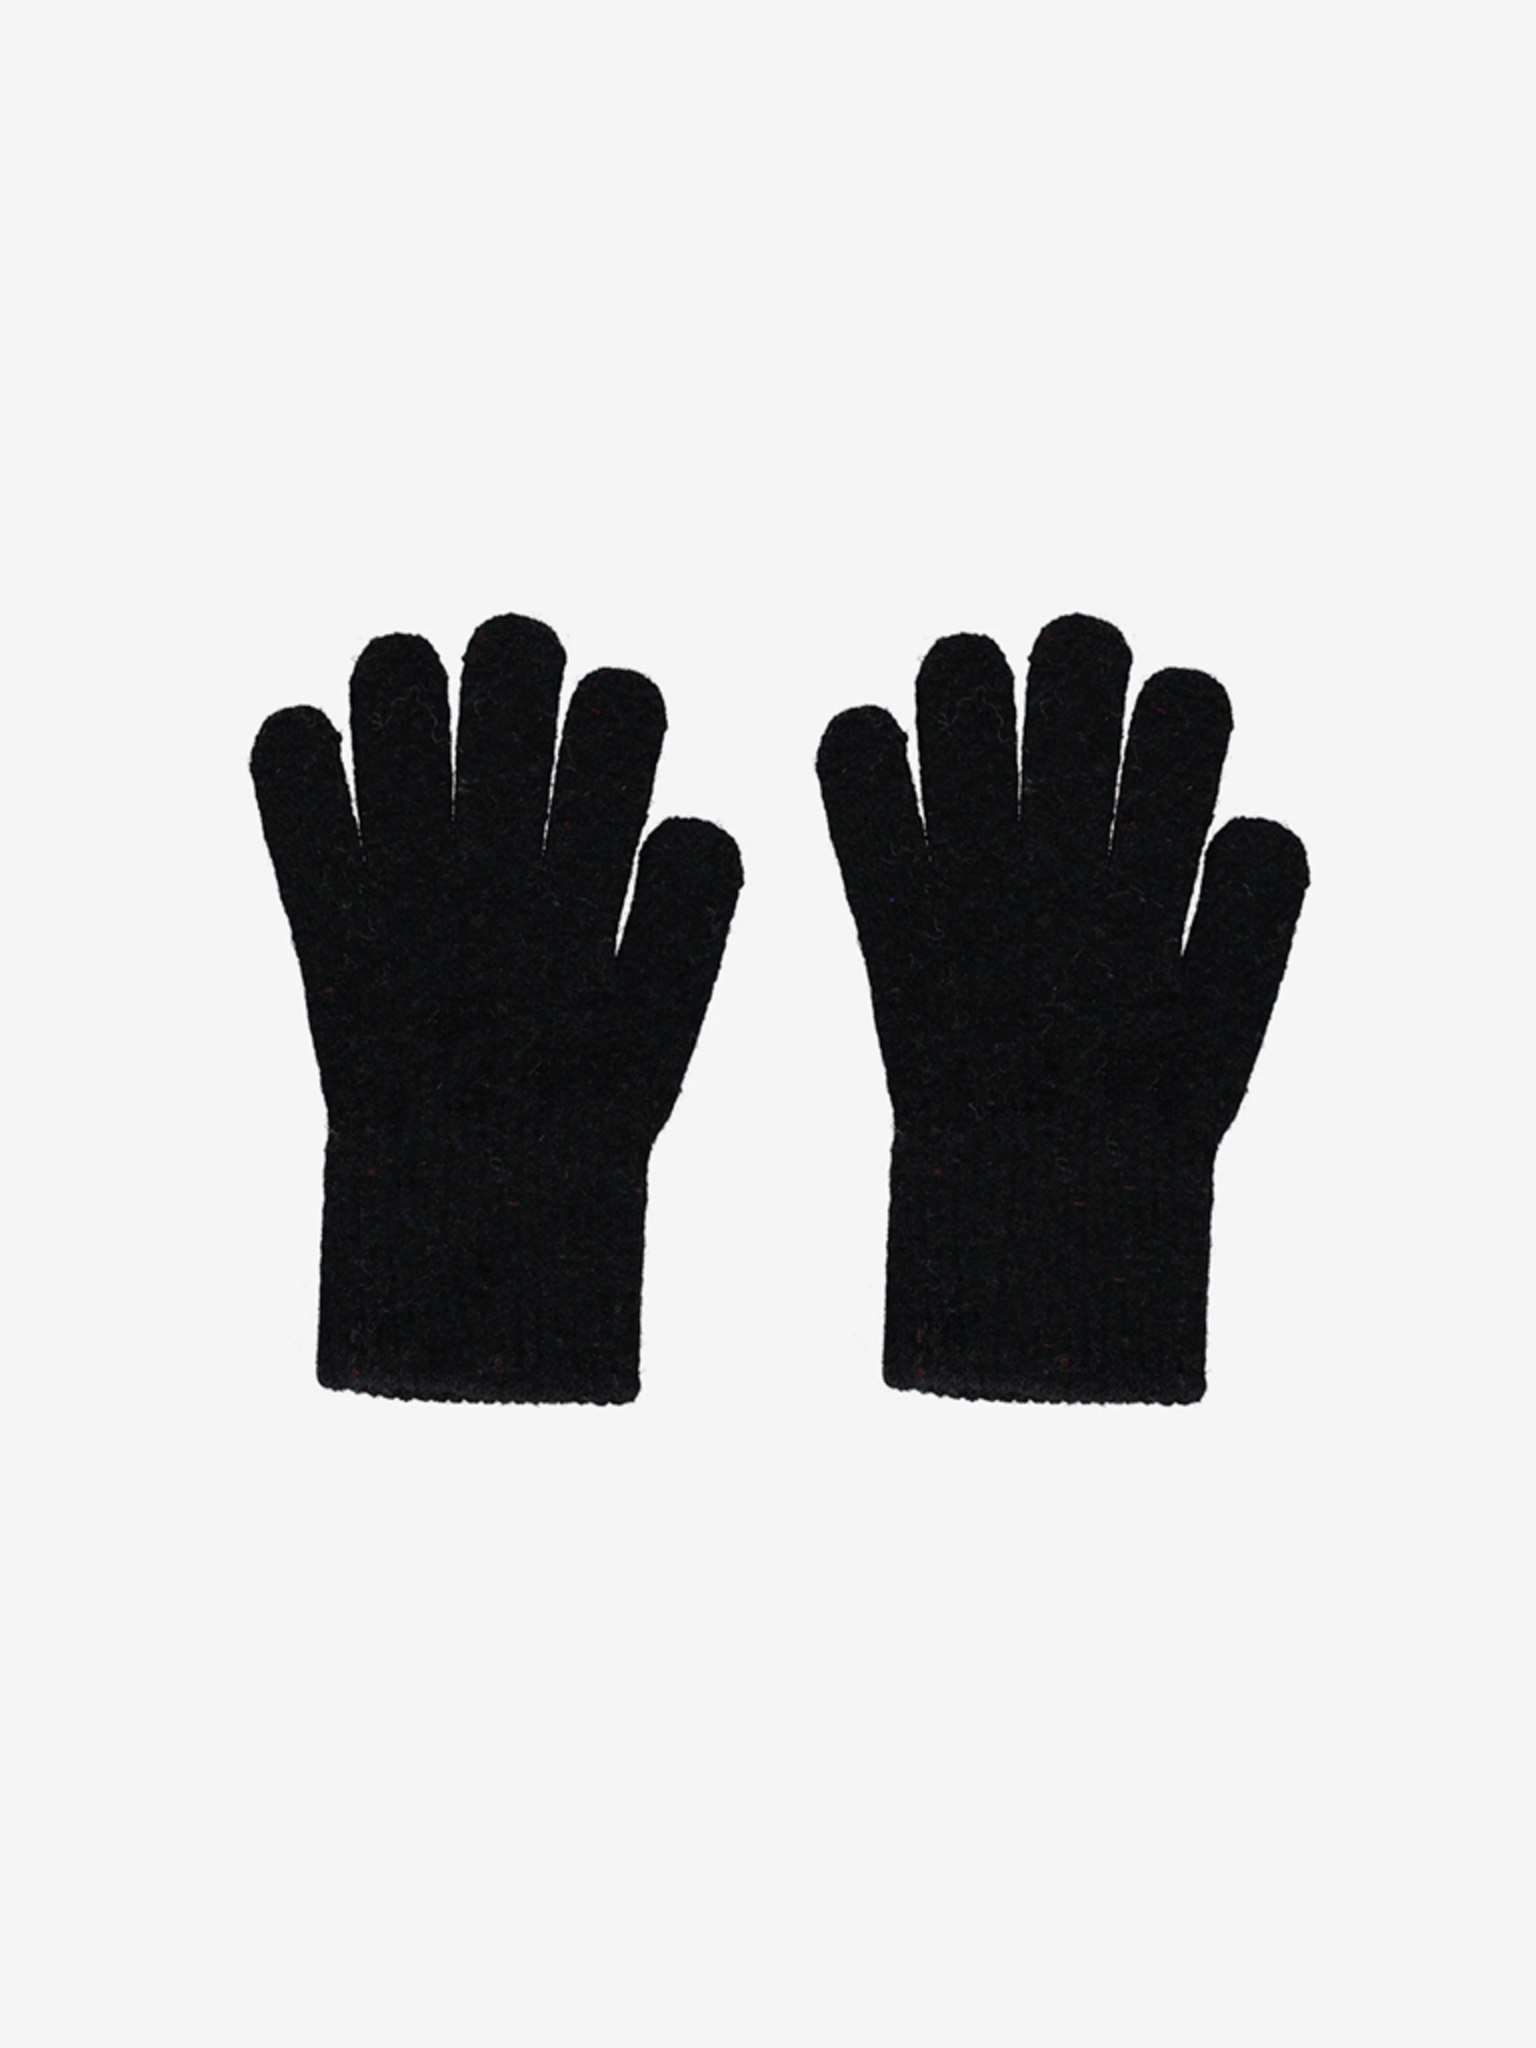 CeLaVi - Basic Magic Finger Gloves, Black/magiska vantar